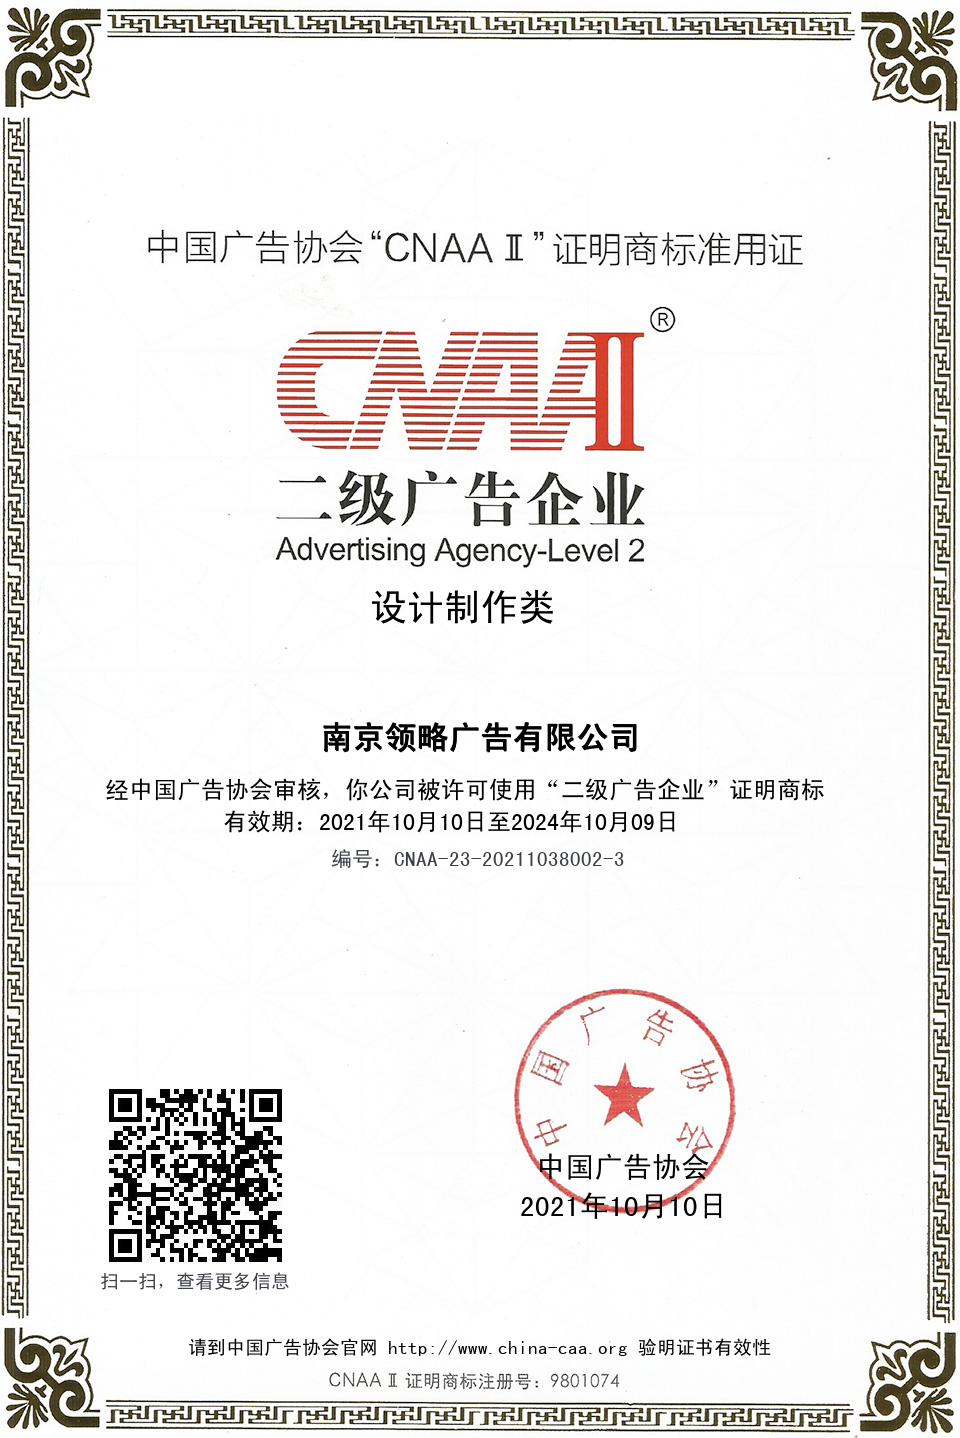 中国广告协会二级广告企业 